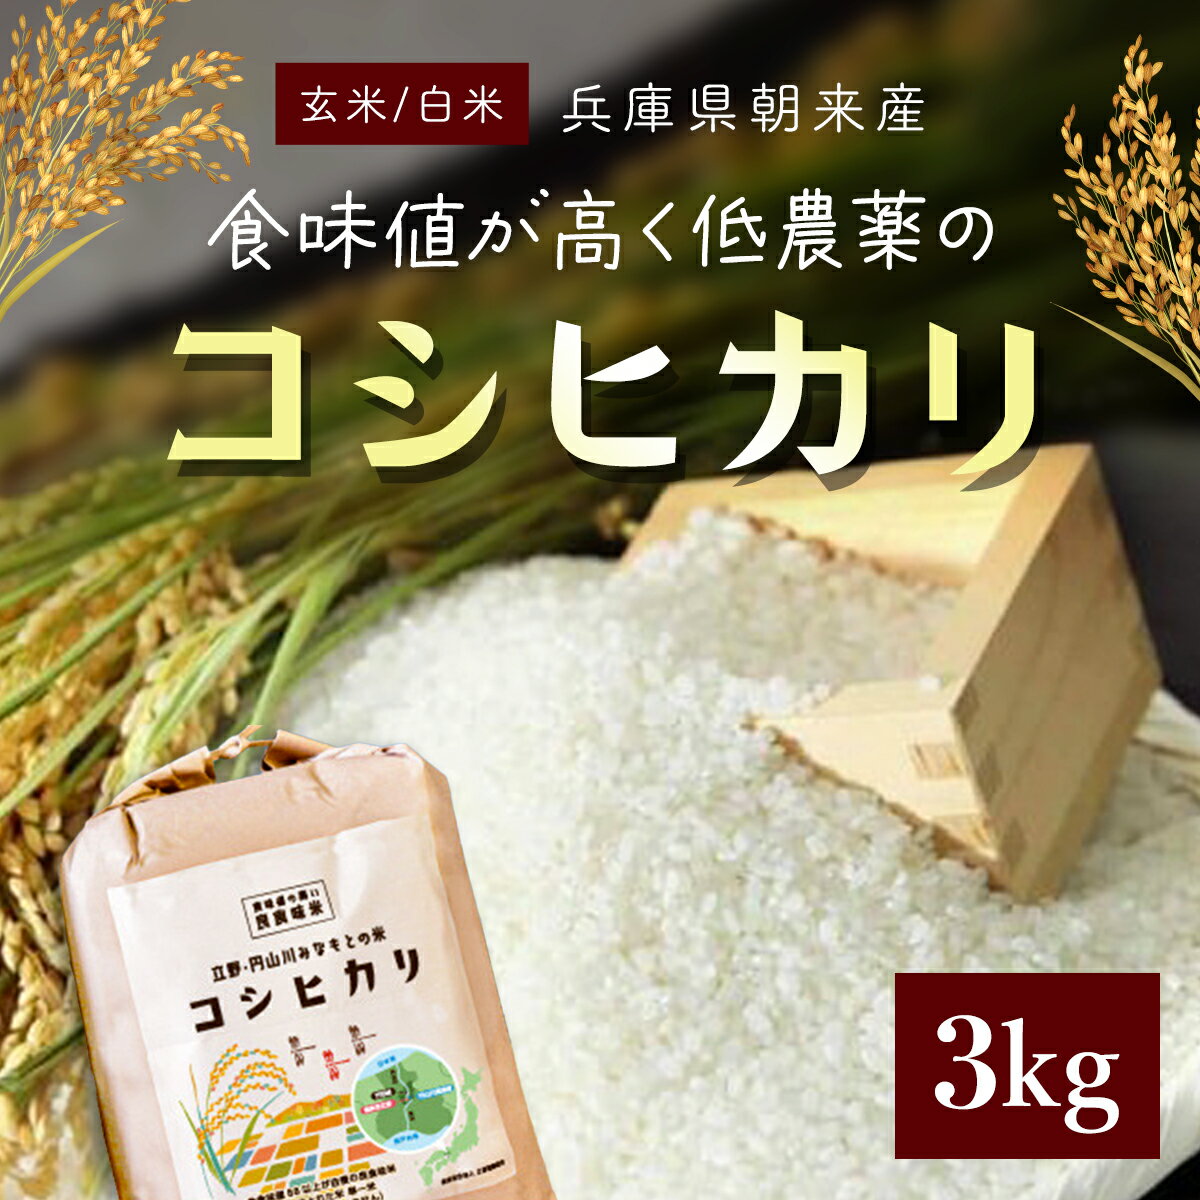 【ふるさと納税】食味値が高く低農薬のコシヒカリ 3kg【円山